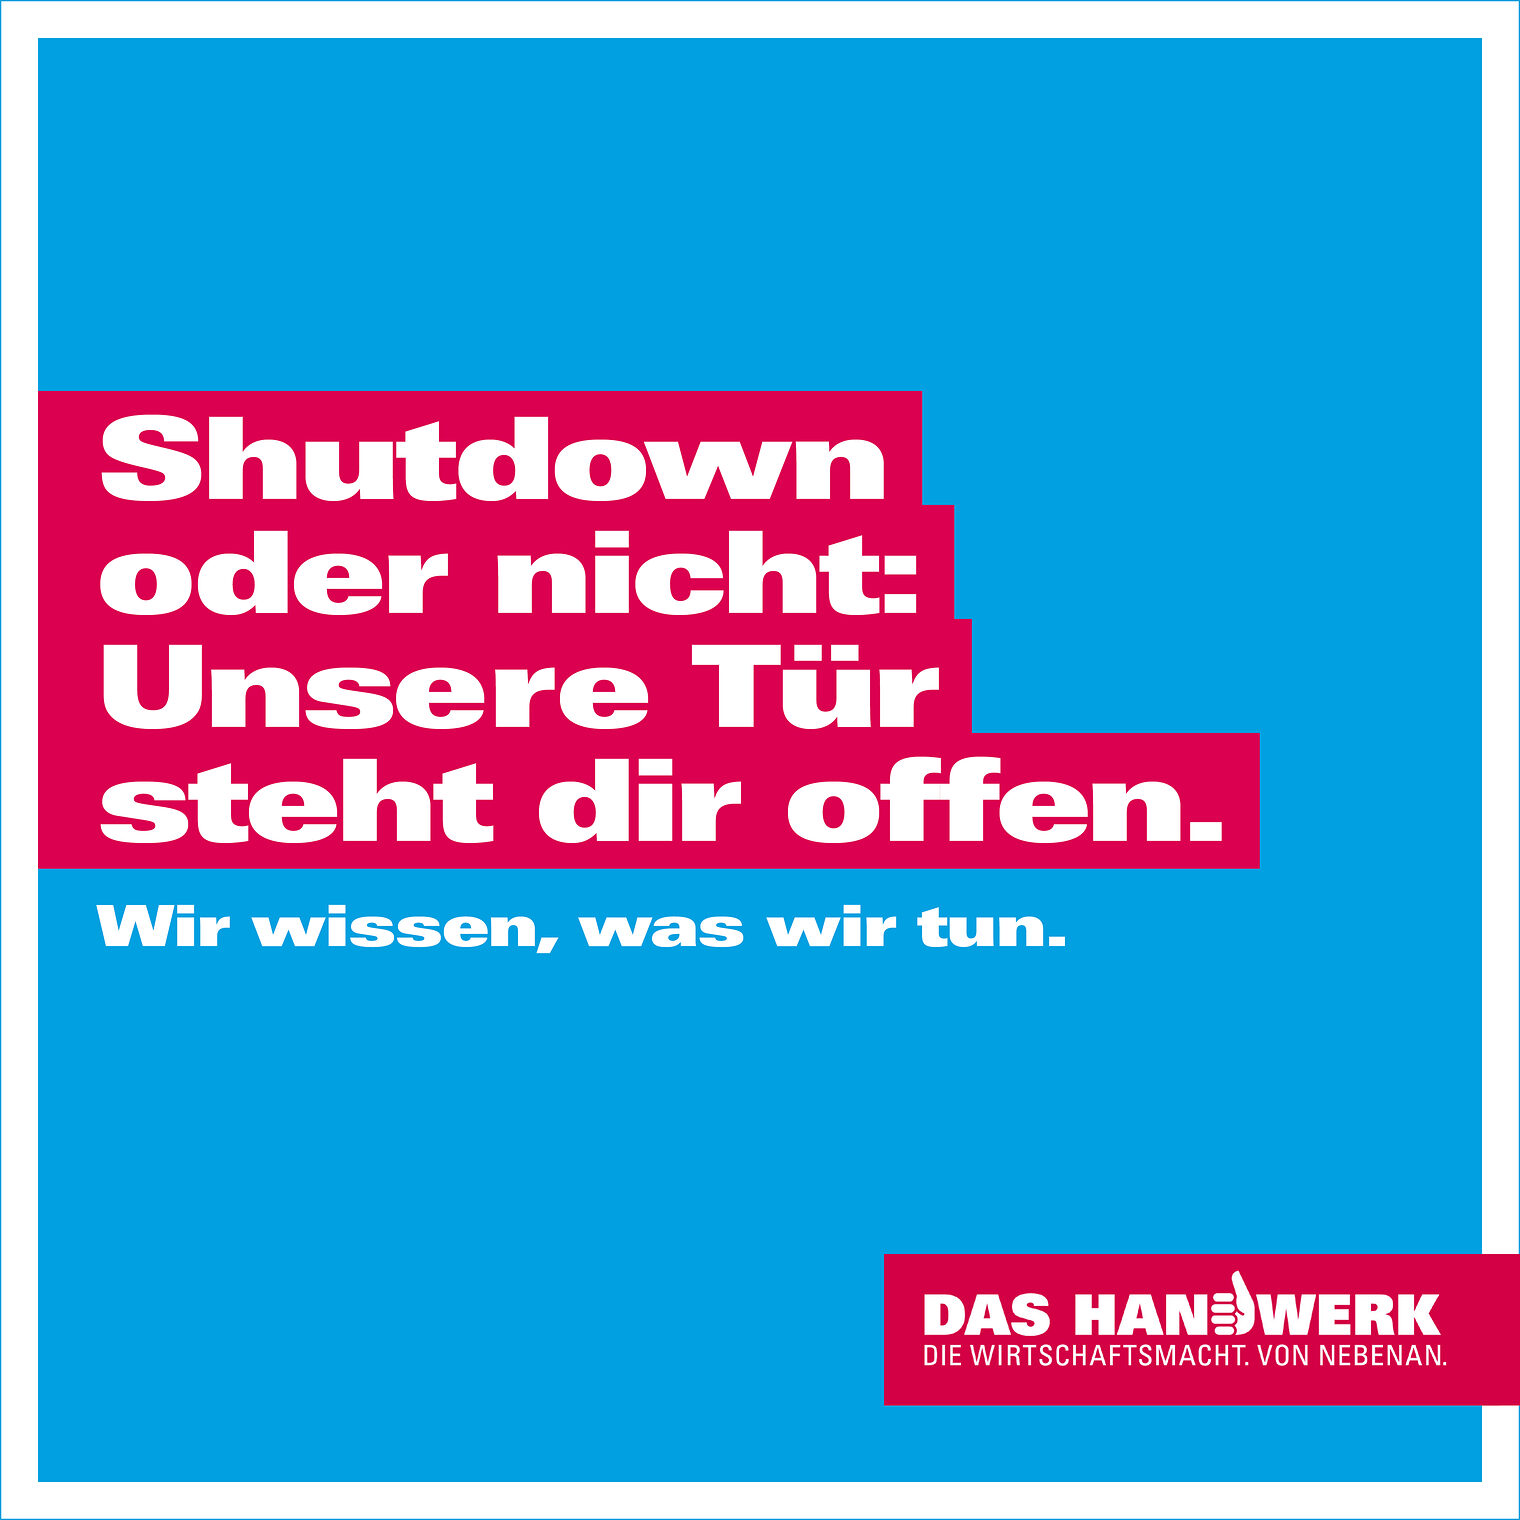 Motiv der Imagekampagne des Handwerks 2020: Shutdown oder nicht: Unsere Tür steht dir offen.